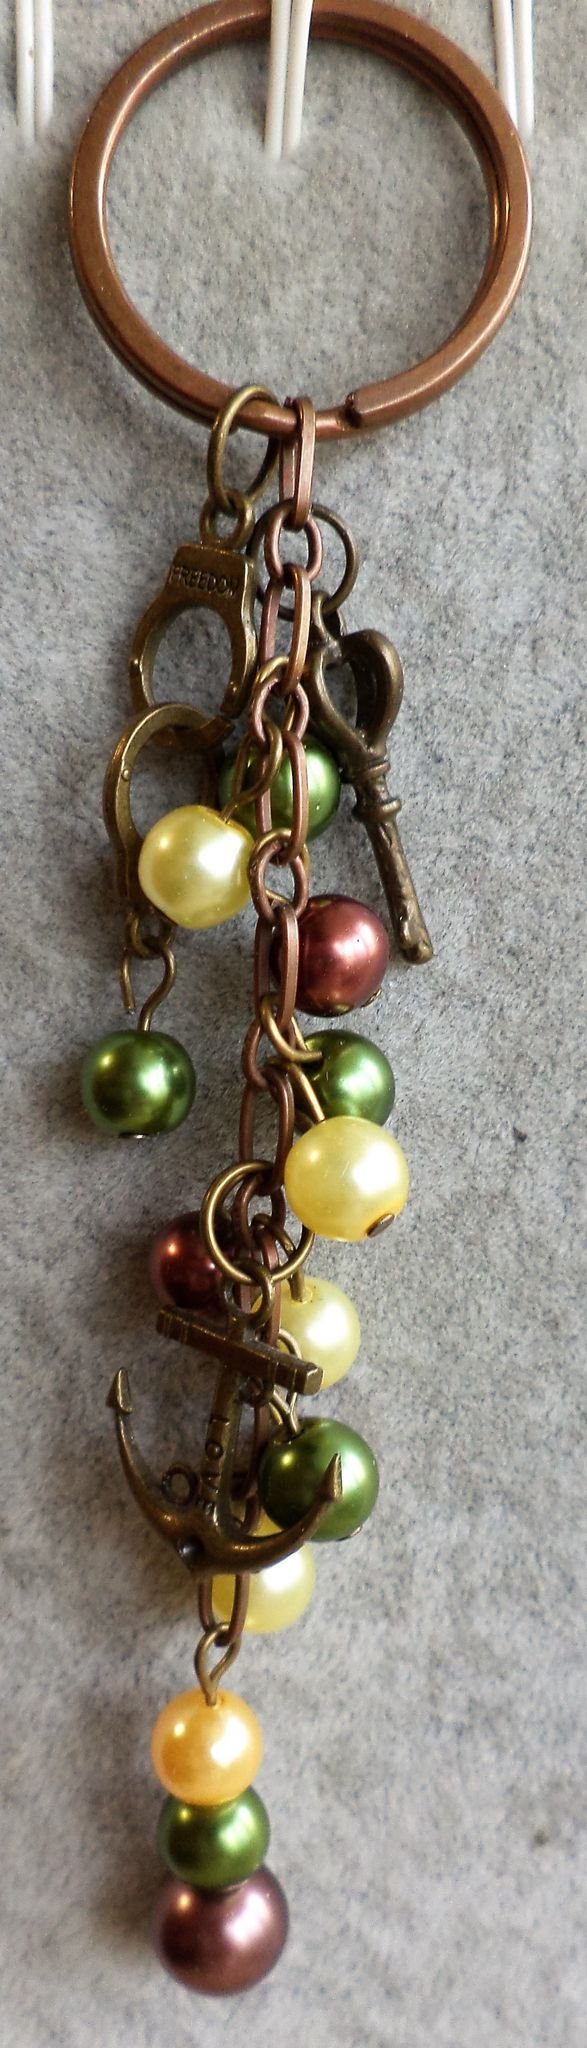 Breloc handmade  sau accesoriu pentru genti cu perle din sticla